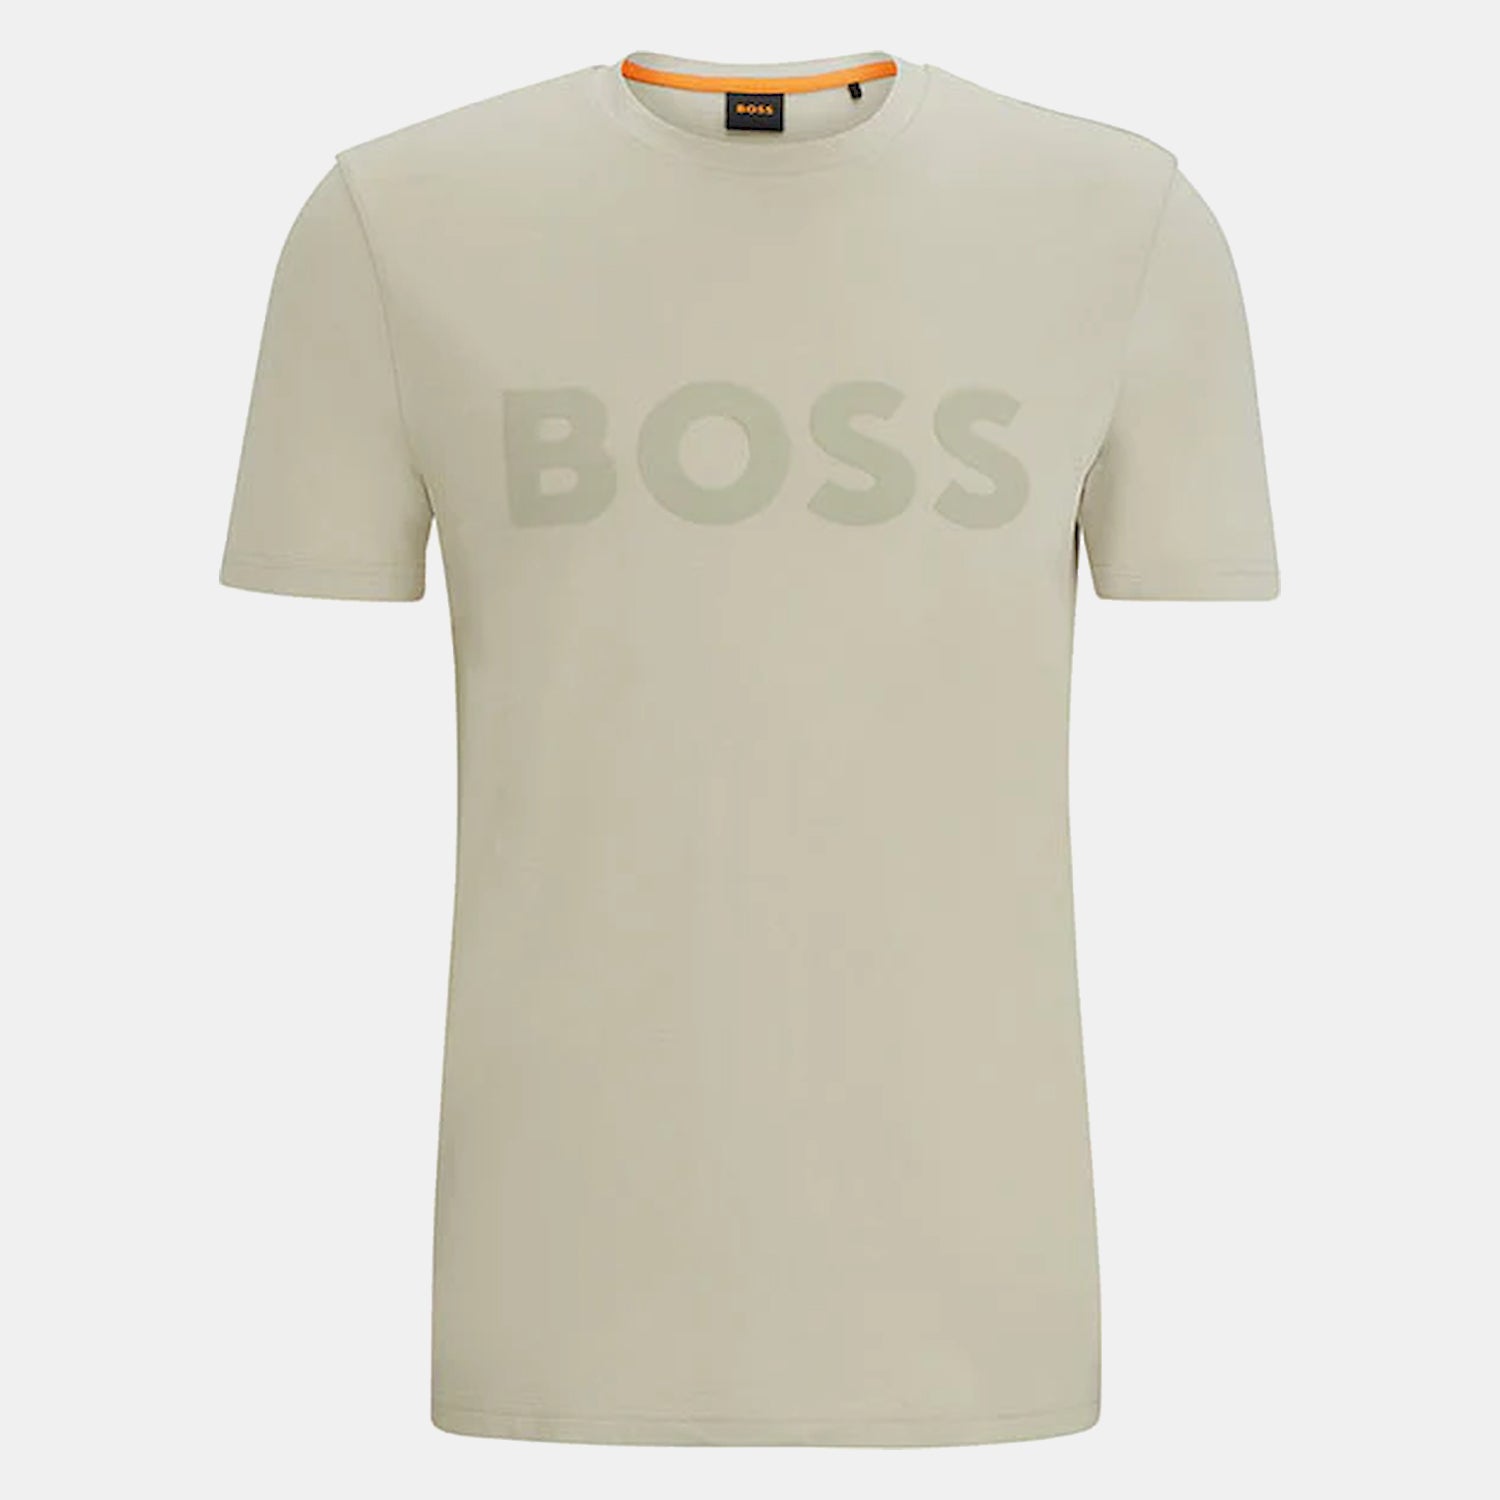 Boss T Shirt Thinking1 Beige Beige_shot1